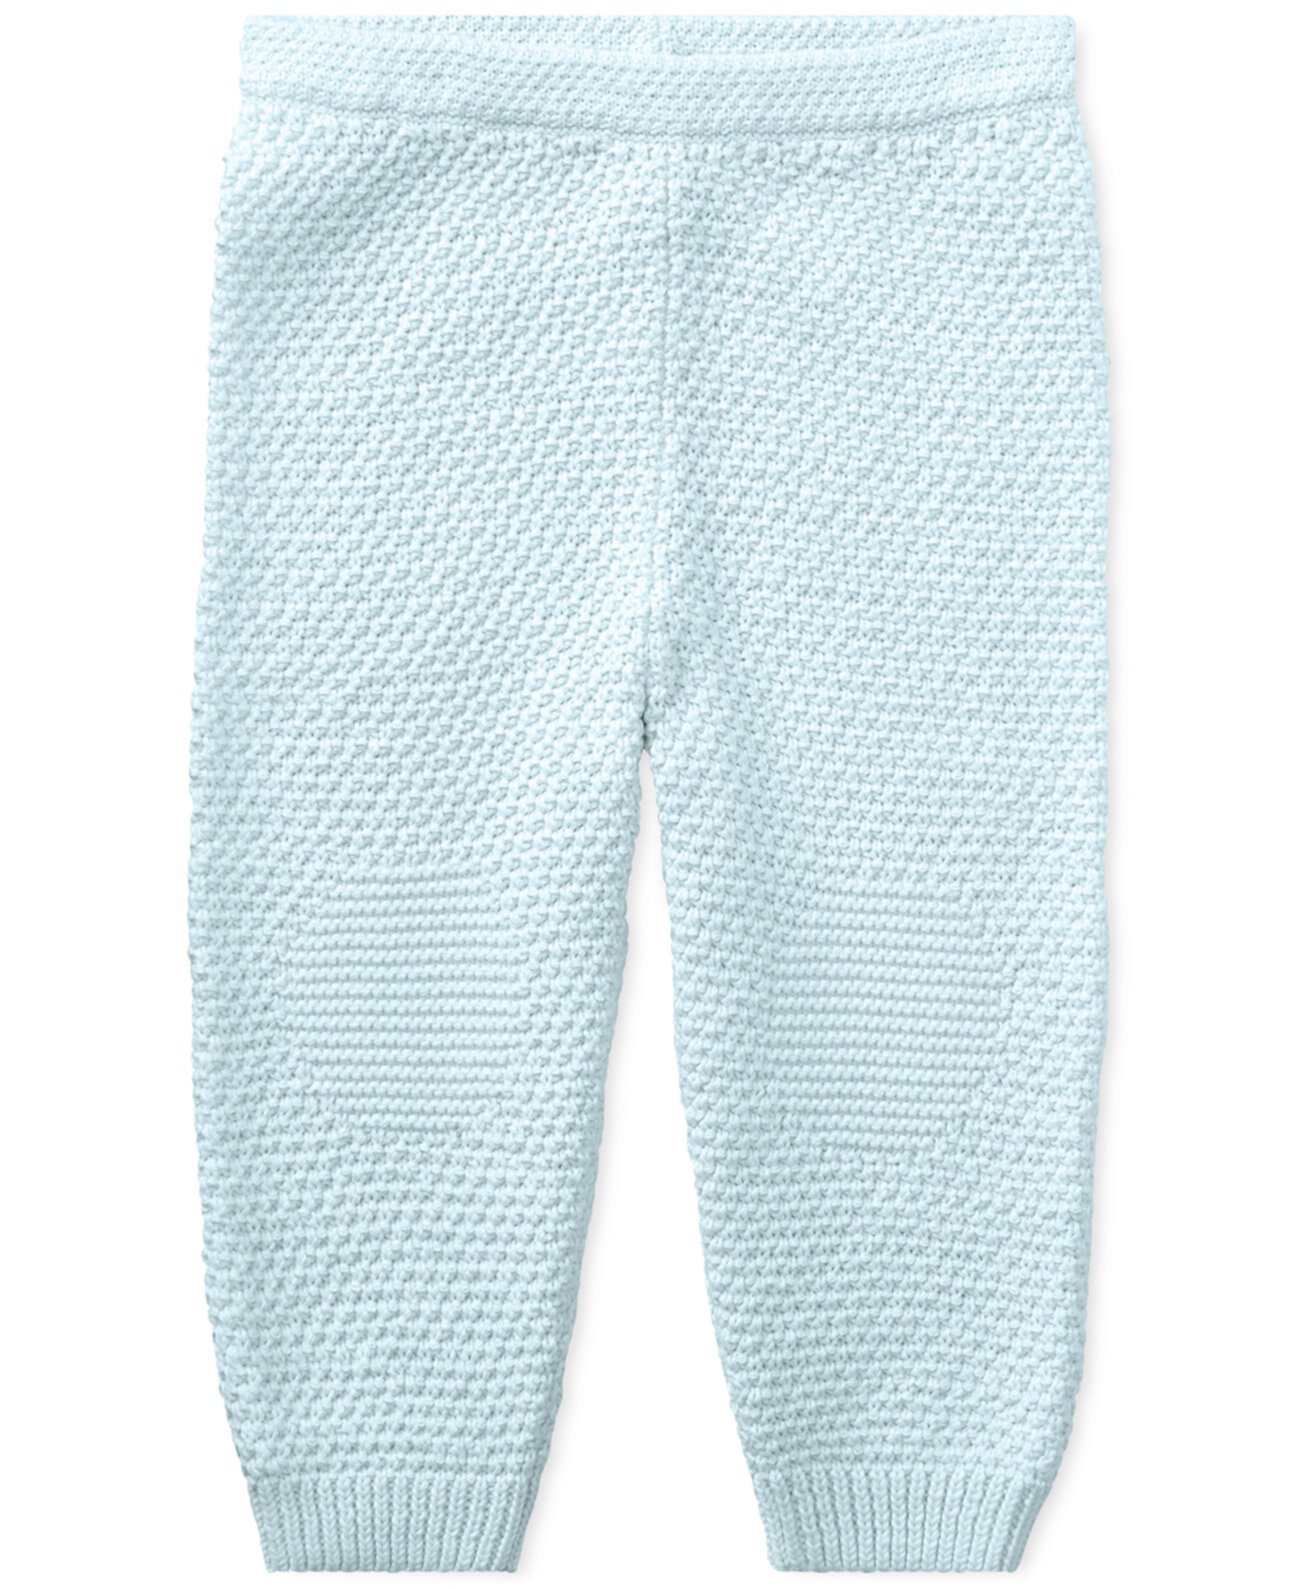 Детские брюки без застежки Ralph Lauren из хлопка нейтрального цвета Ralph Lauren